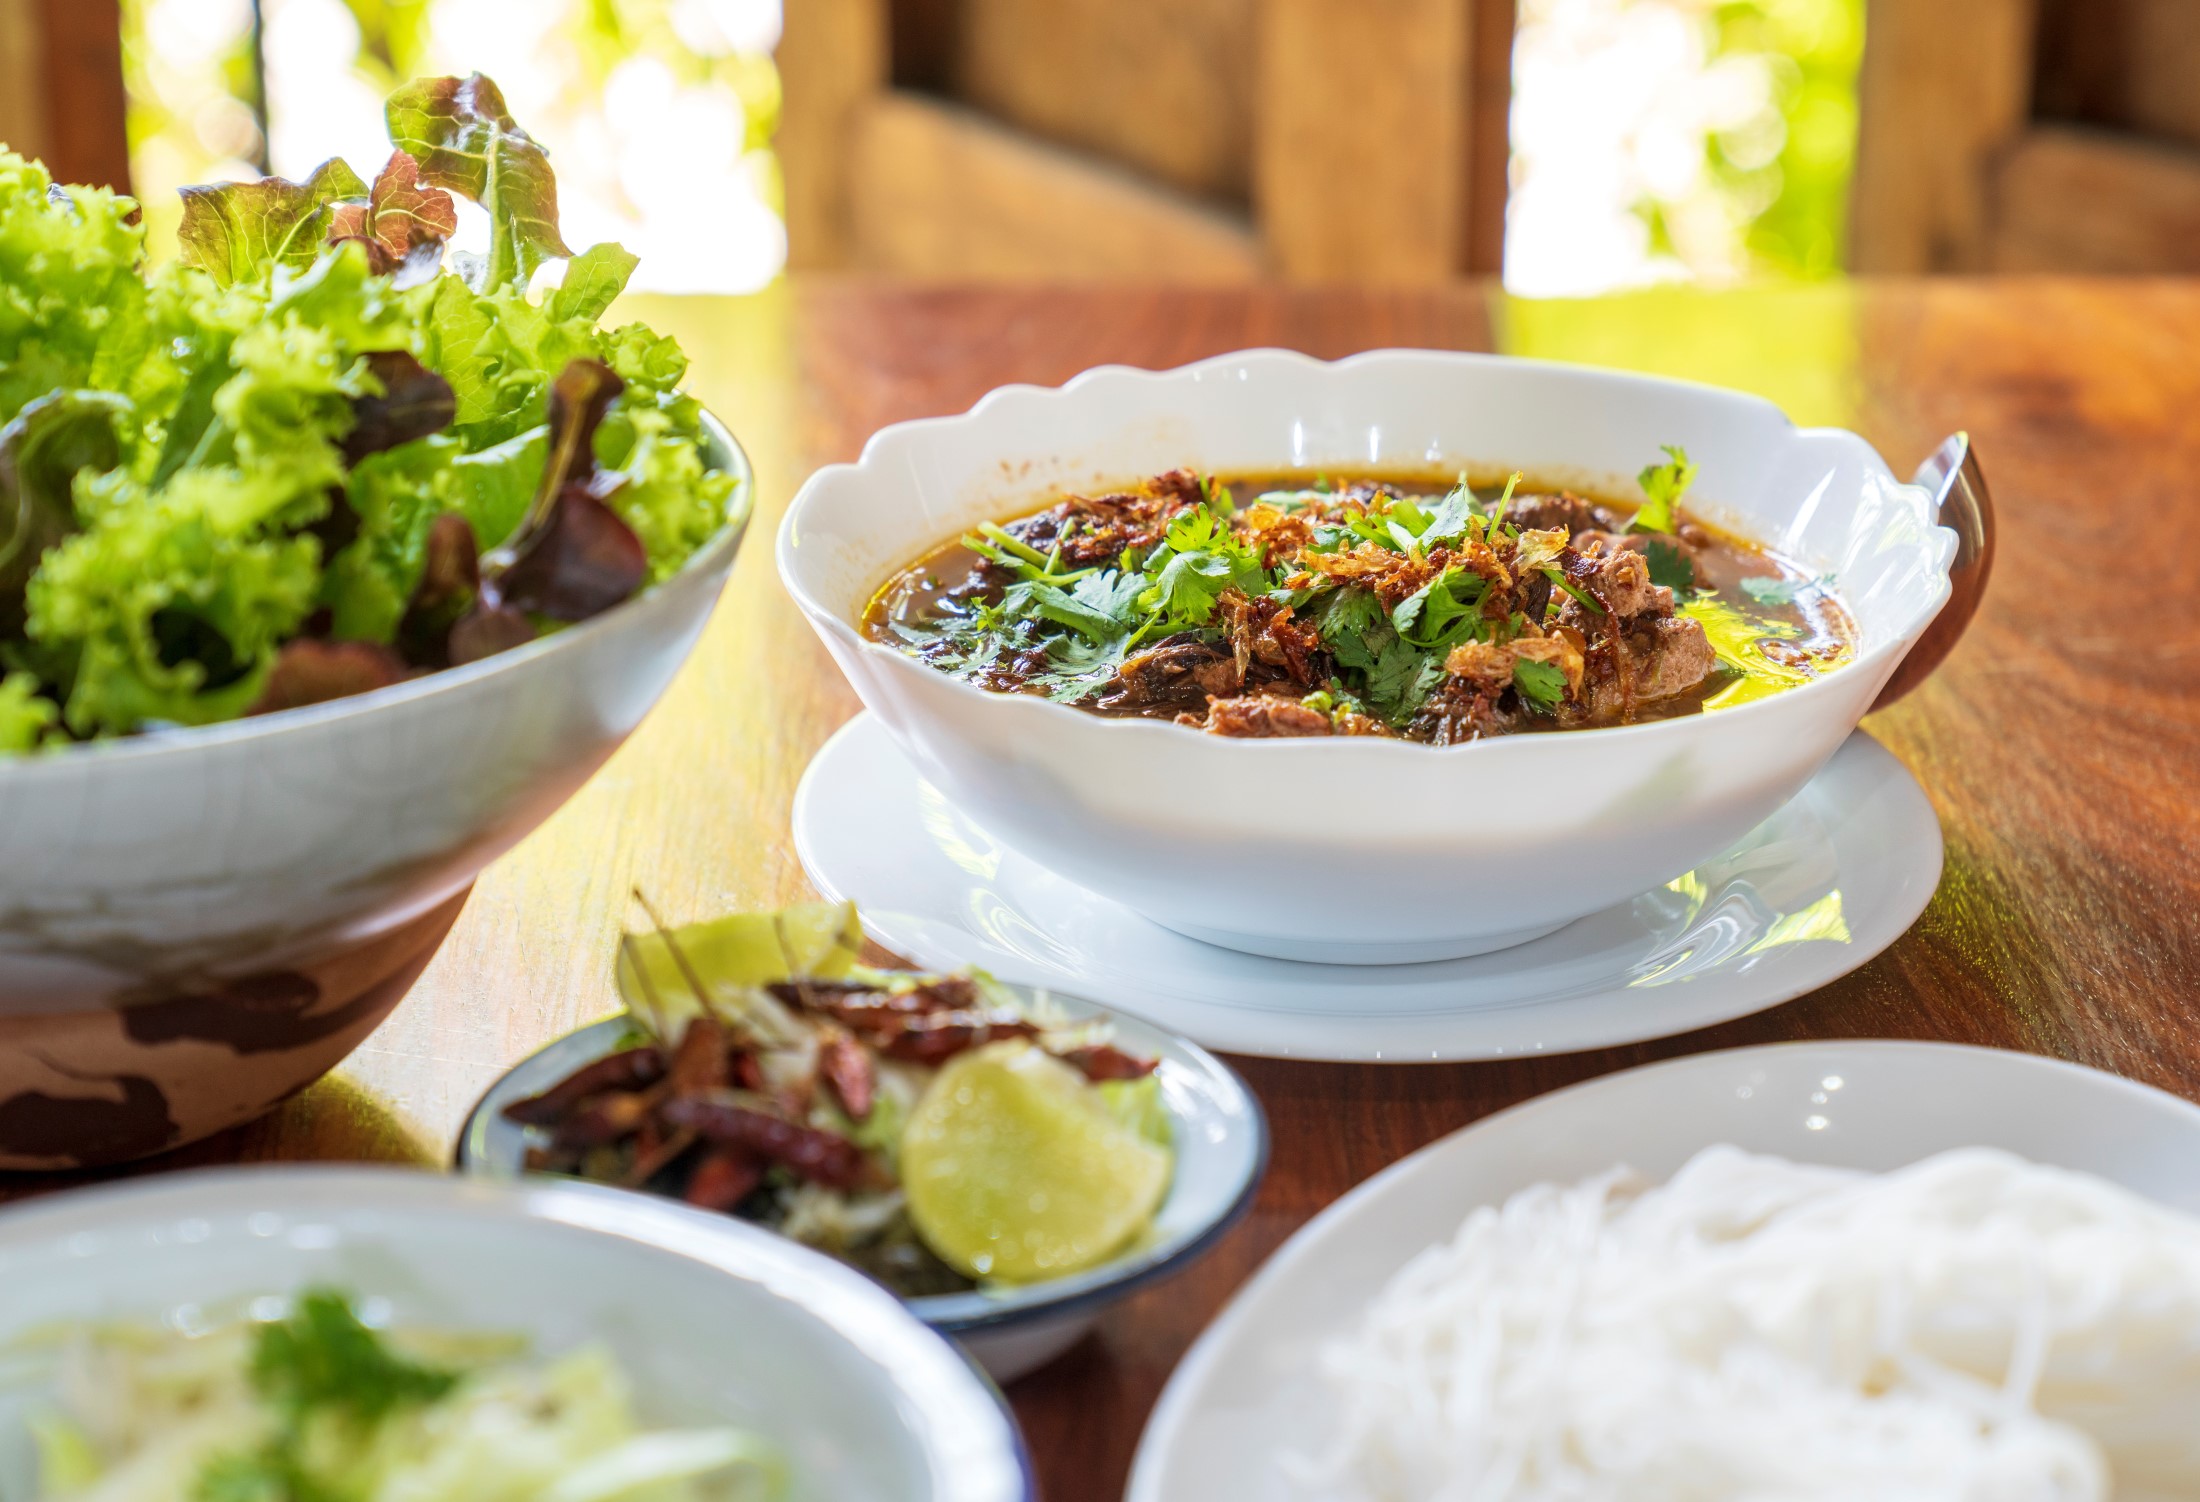 อาหารไทย ภาคเหนือ ที่นักท่องเที่ยวทั่วโลกต้องลอง